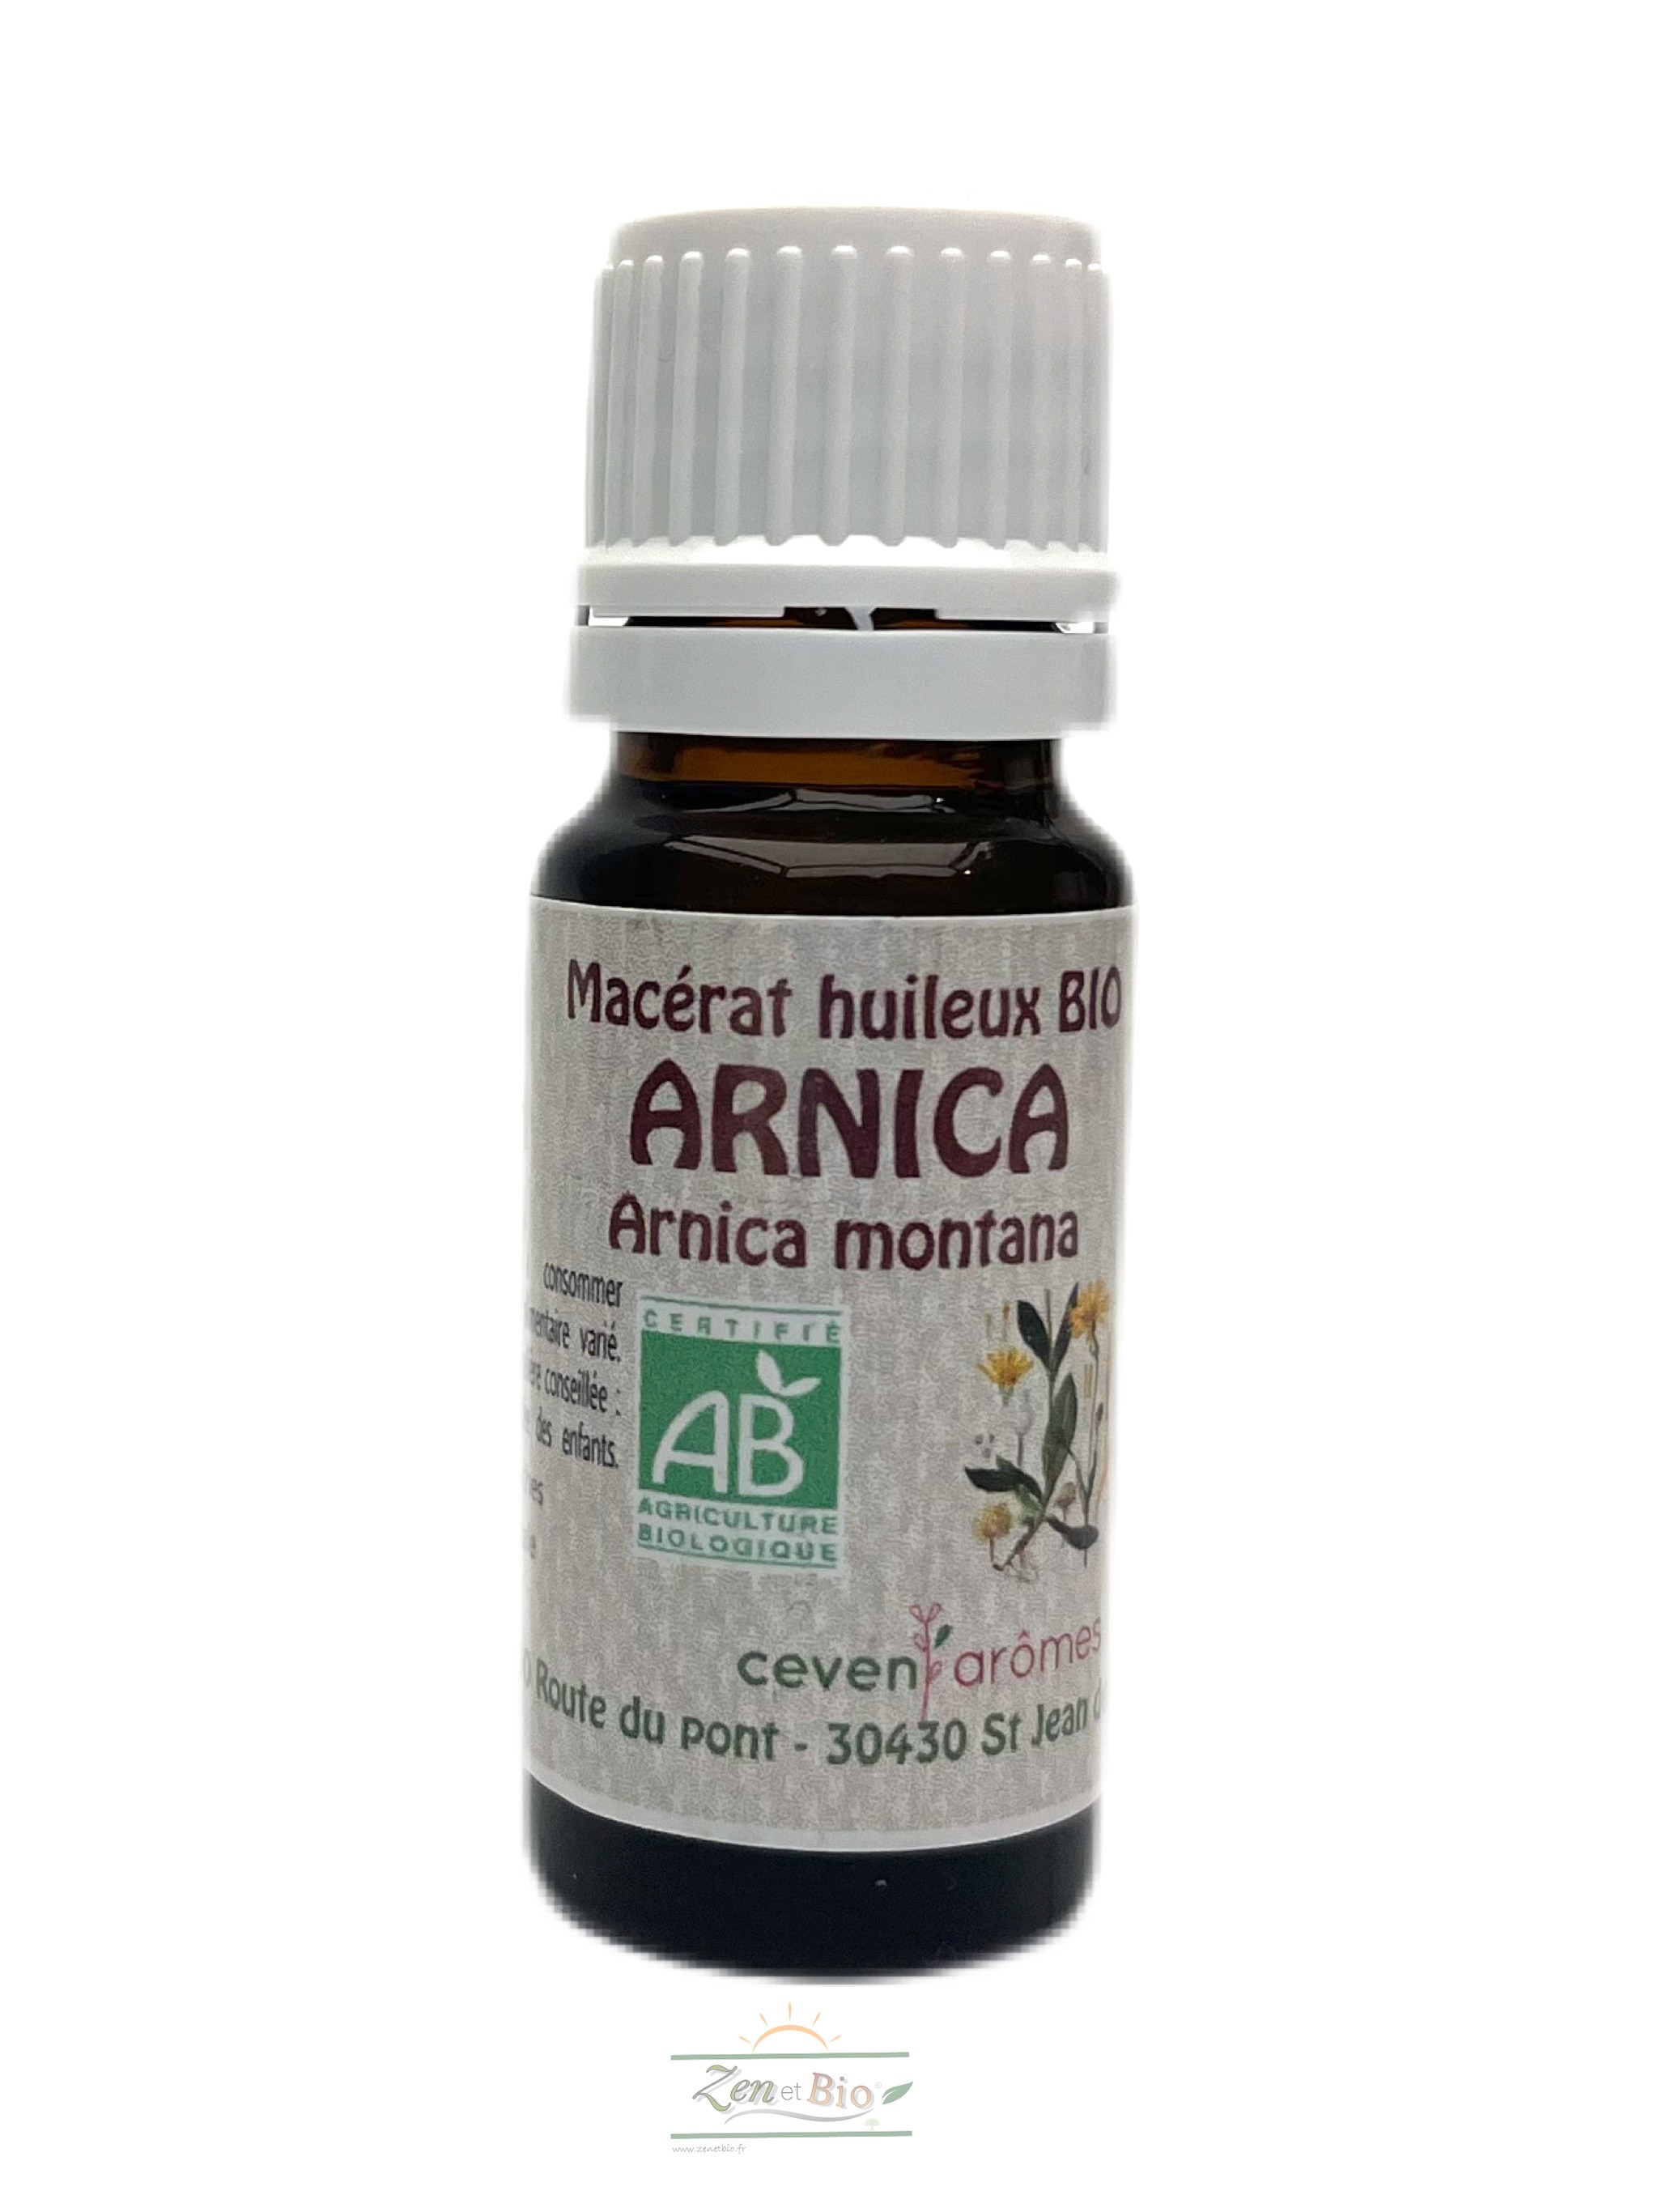 Huile d'Arnica bio. Macérat huileux biologique d'Arnica Montana